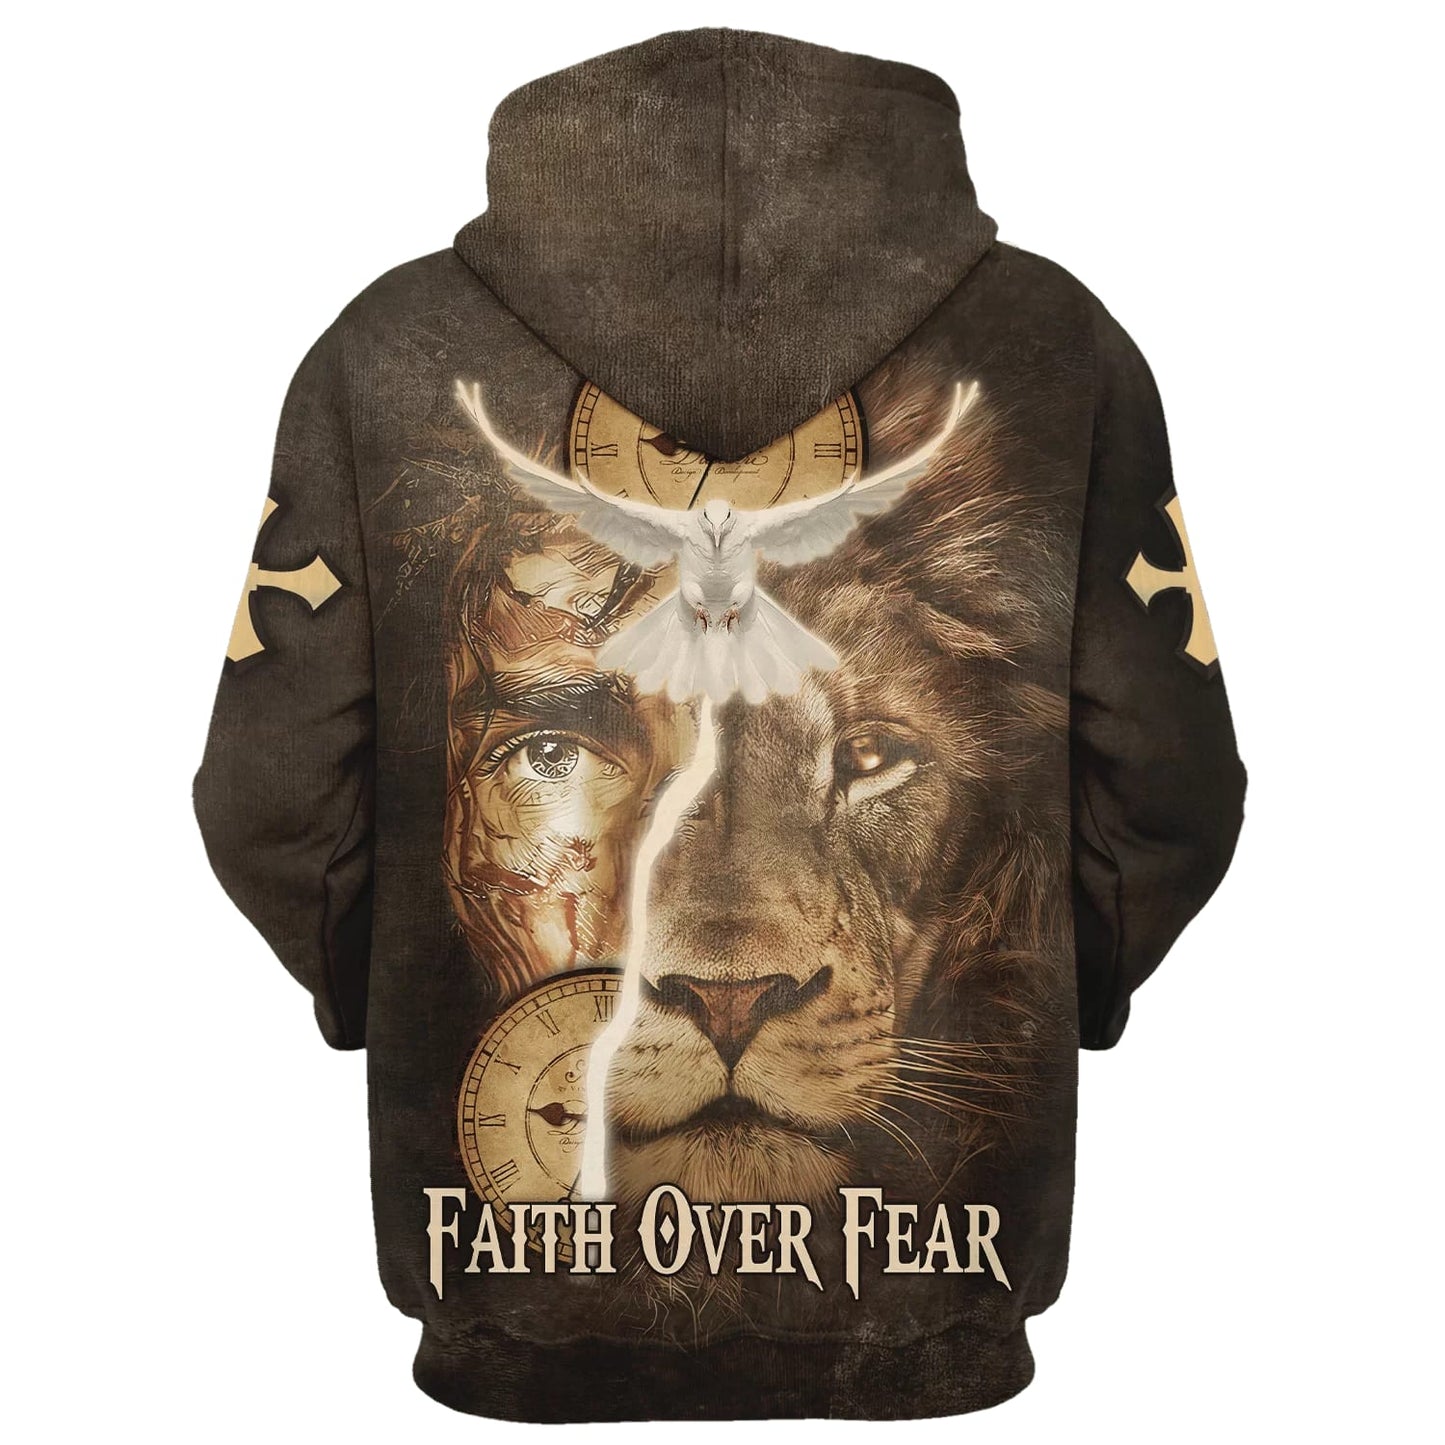 Failth Over Fear Lion Jesus 3d Hoodie - Men & Women Christian Hoodie - 3D Printed Hoodie